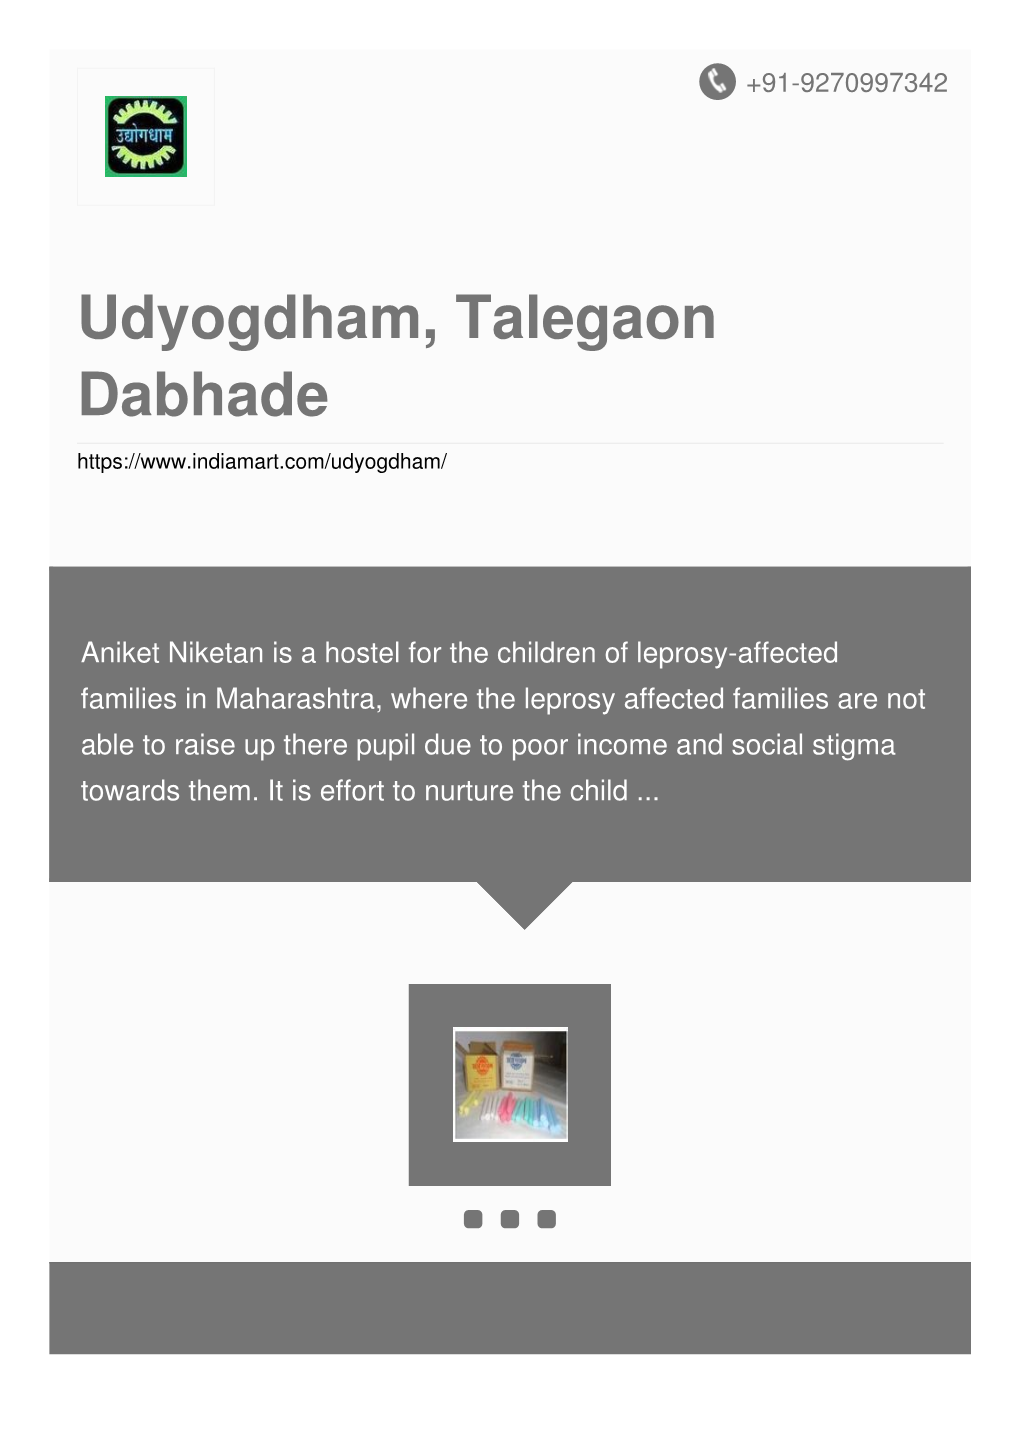 Udyogdham, Talegaon Dabhade